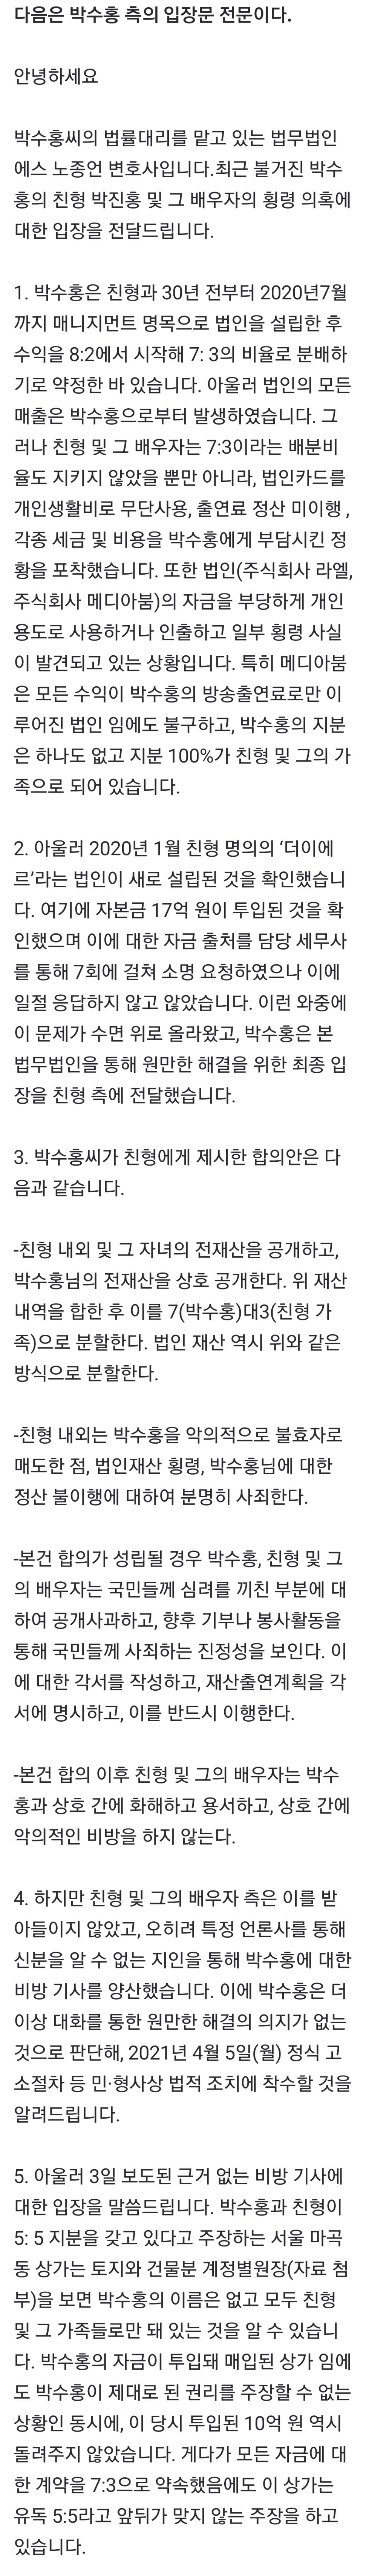 박수홍측 변호사: ""법적조치 시행 하겠다""